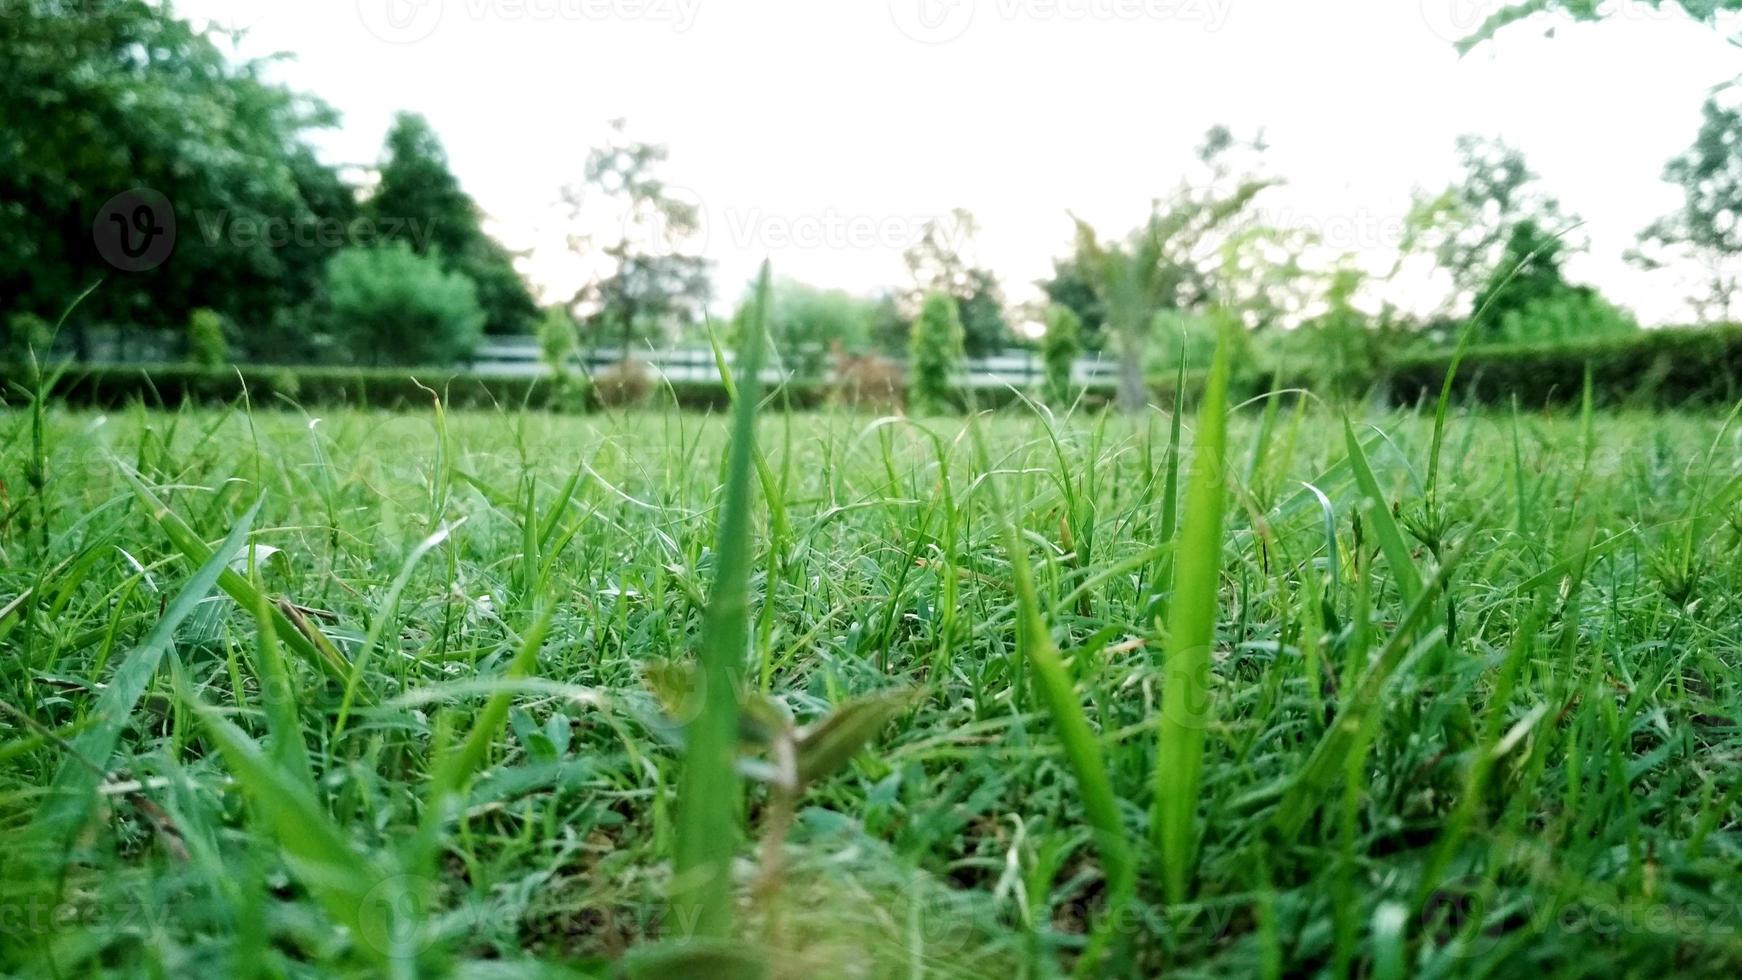 närbild på gräs i parken foto